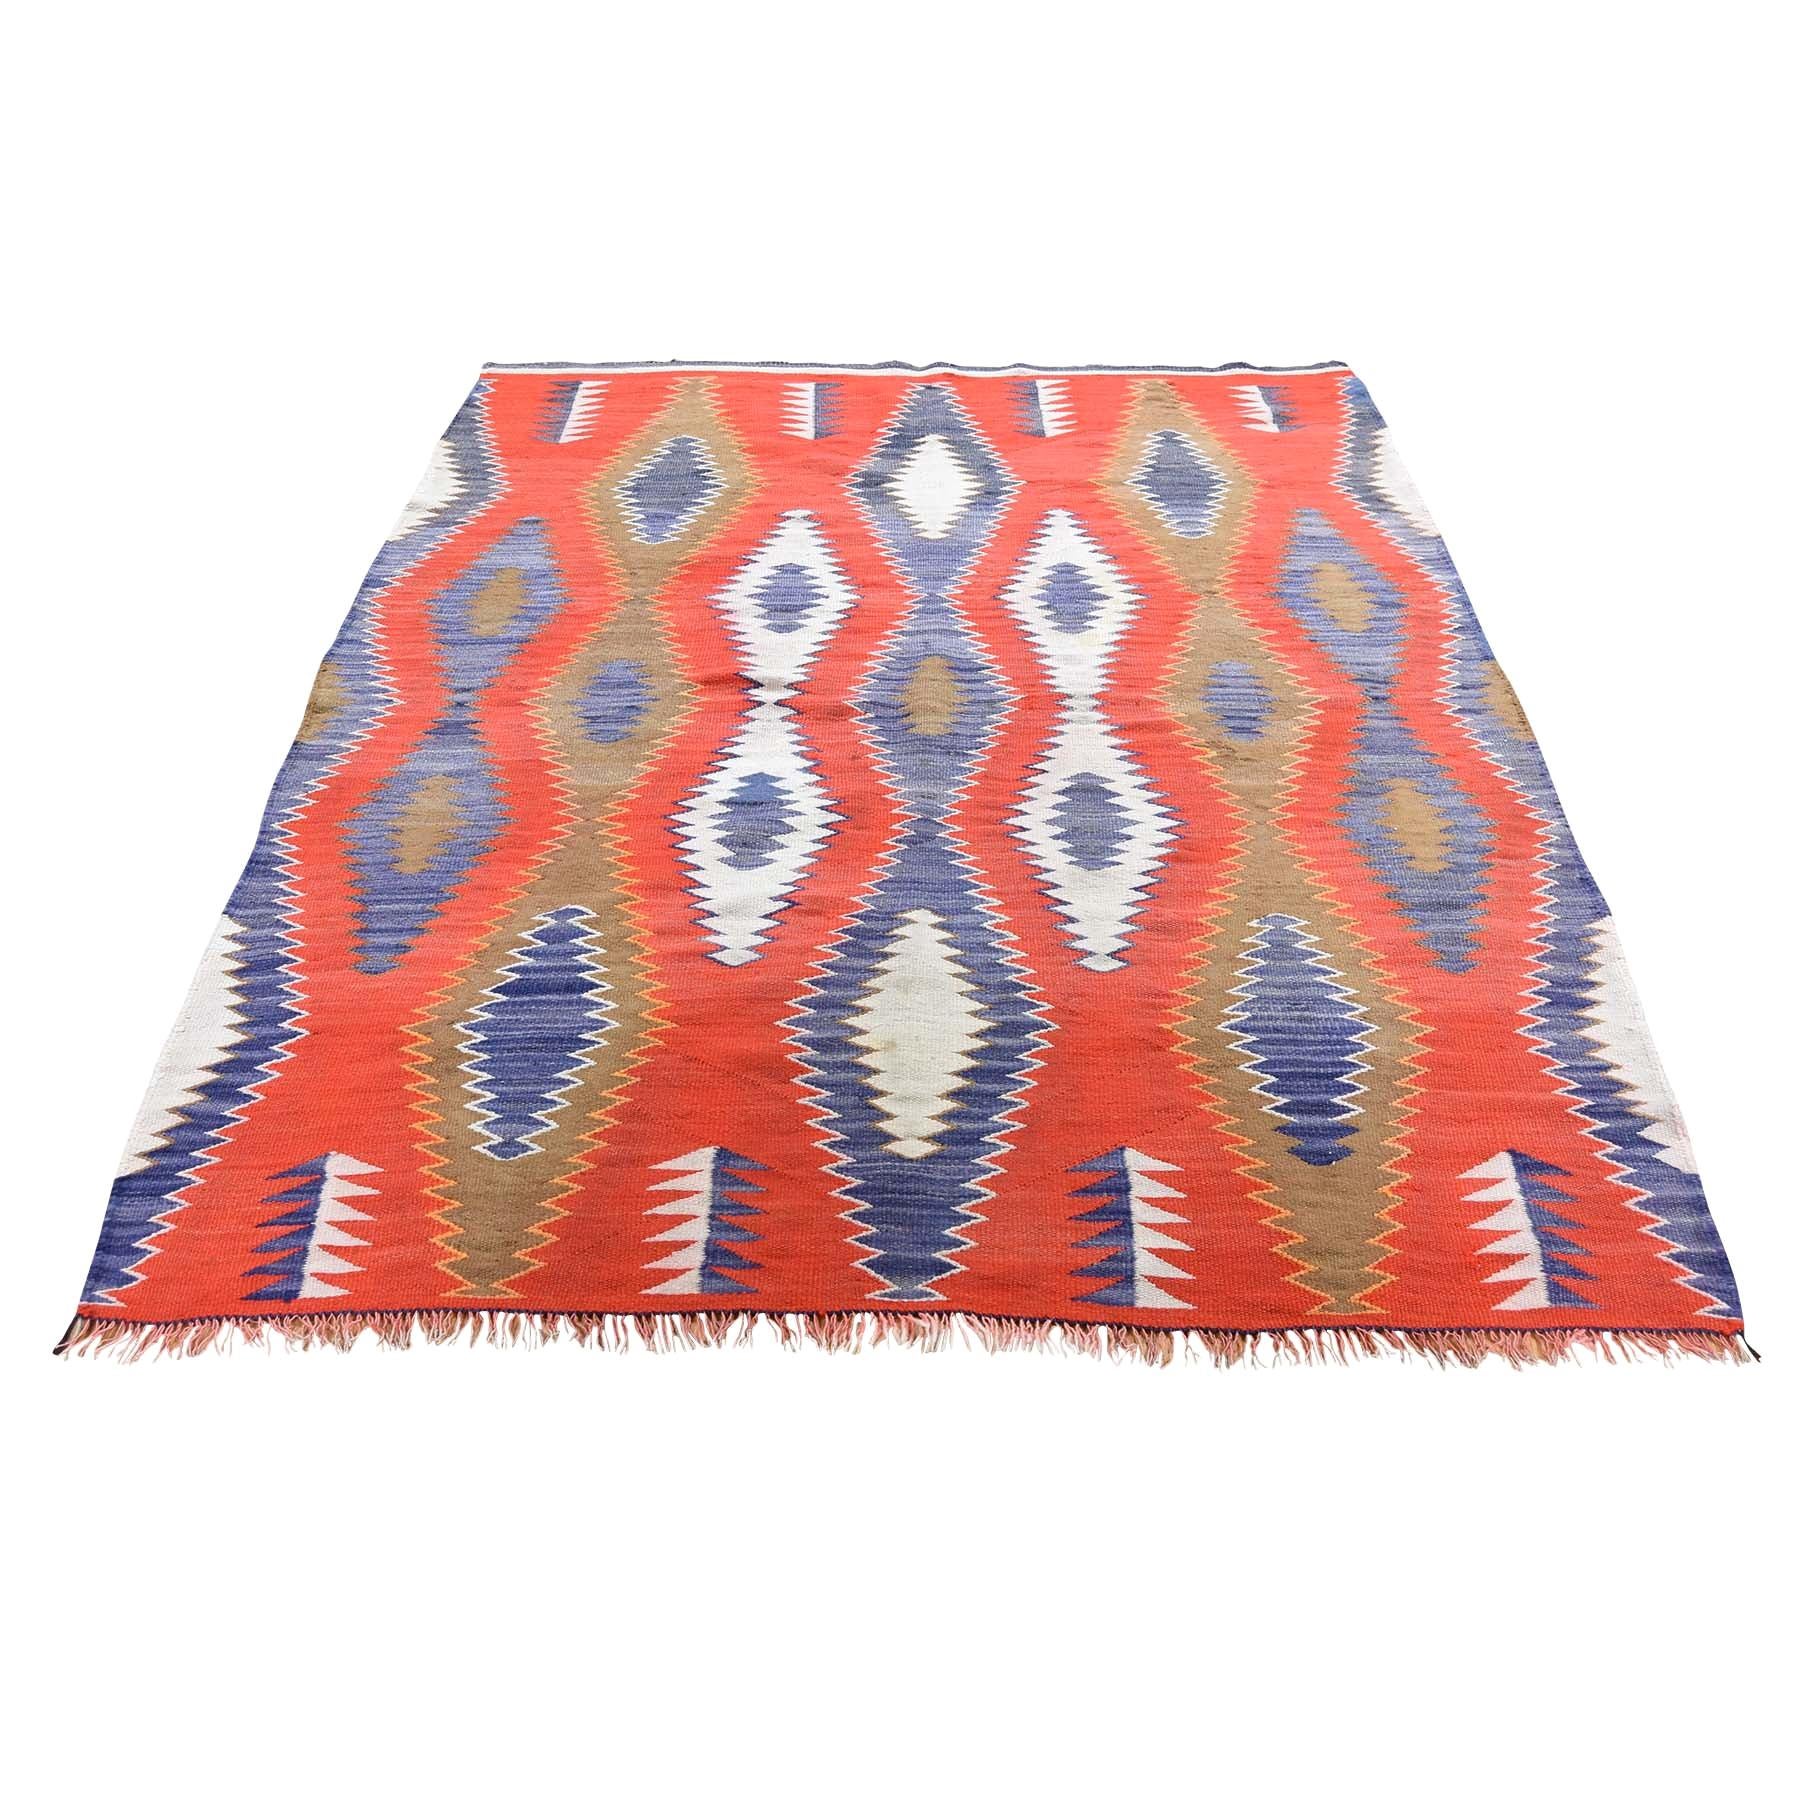 Vintage American Indian Navajo Flat-Weave Handwoven Rug